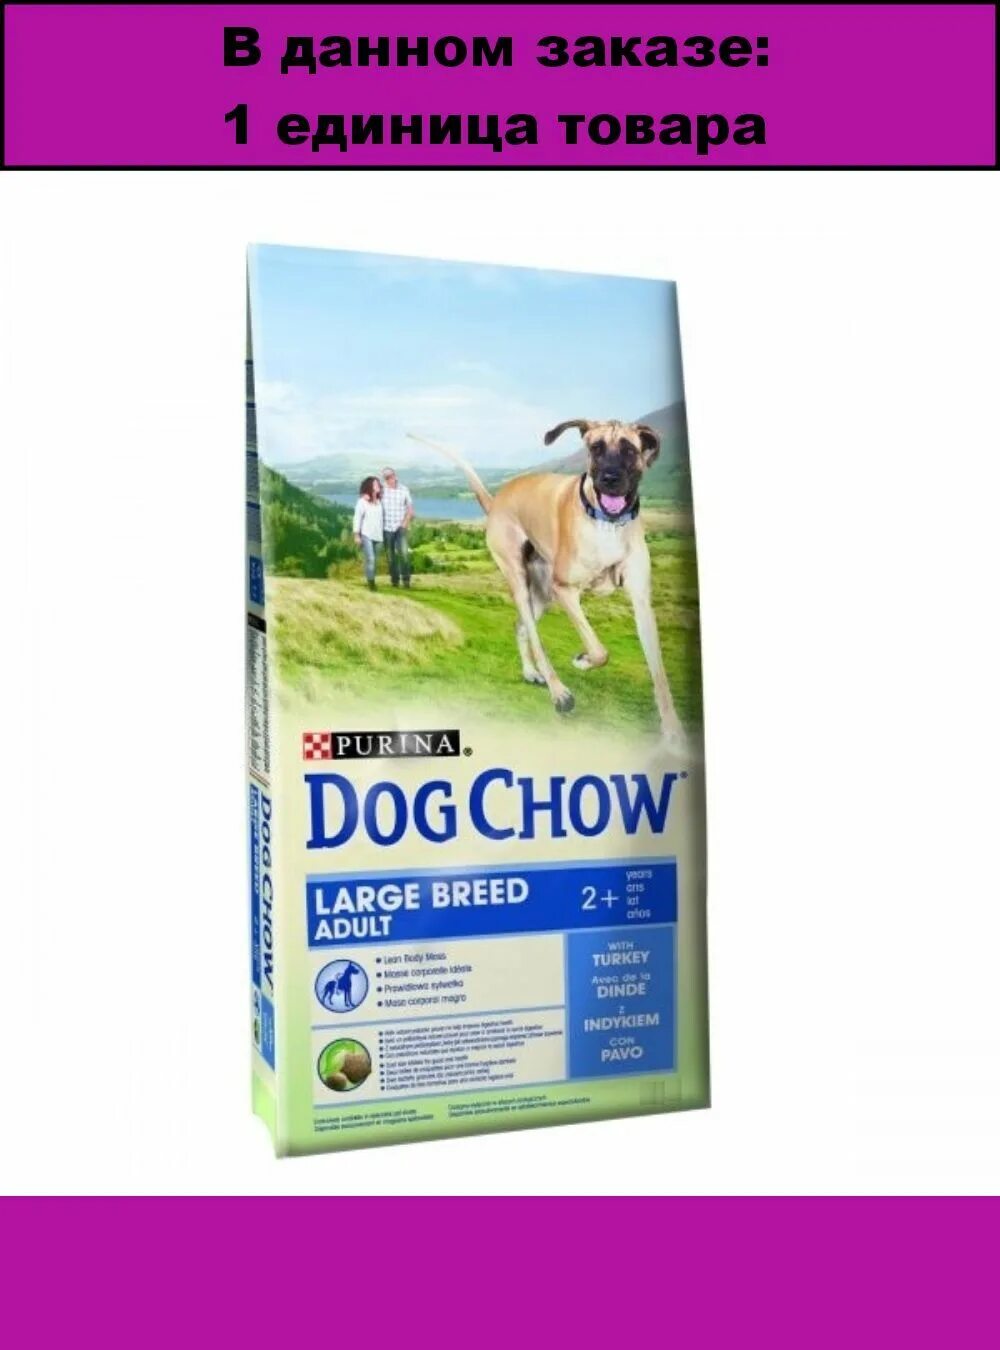 Корм для собак сухой 14 кг. Дог чау для крупных пород 2кг. Dog Chow корм для собак 14 кг индейкой. Корм Dog Chow для взрослых собак старше 5 лет, с ягненком, 2,5 кг. Дог чау с индейкой.